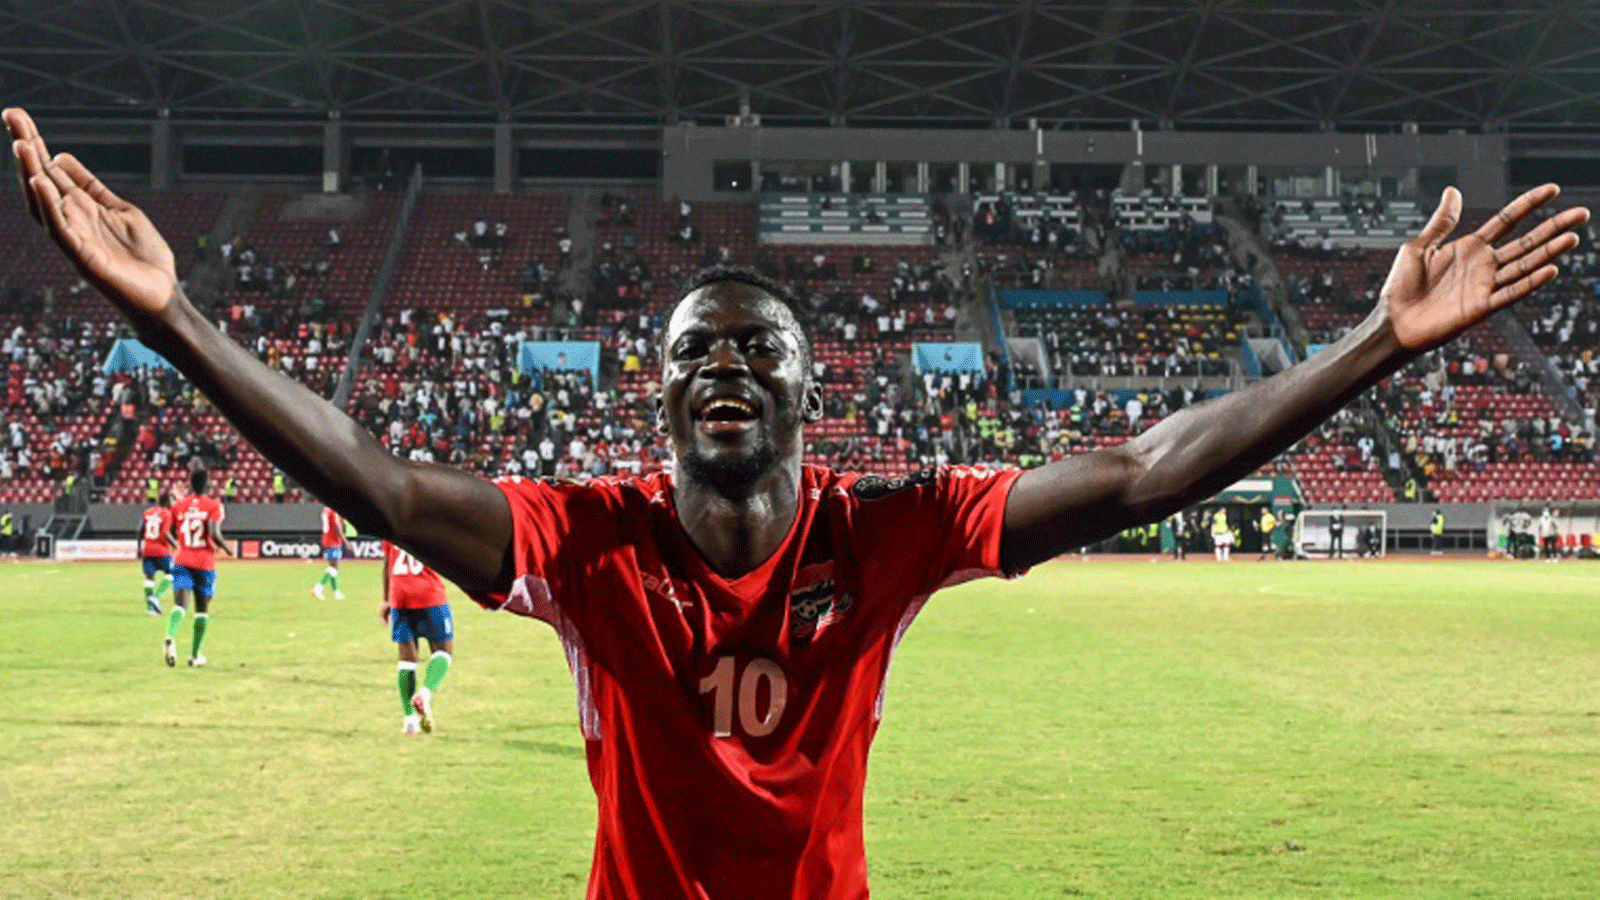 نجم منتخب غامبيا موسى بارو يحتفل بهدف الفوز في مرمى تونس (1-صفر) في الجولة الثالثة الاخيرة من دور المجموعات لكأس الأمم الأفريقية في الكاميرون في 20 كانون الثاني/يناير 2022.